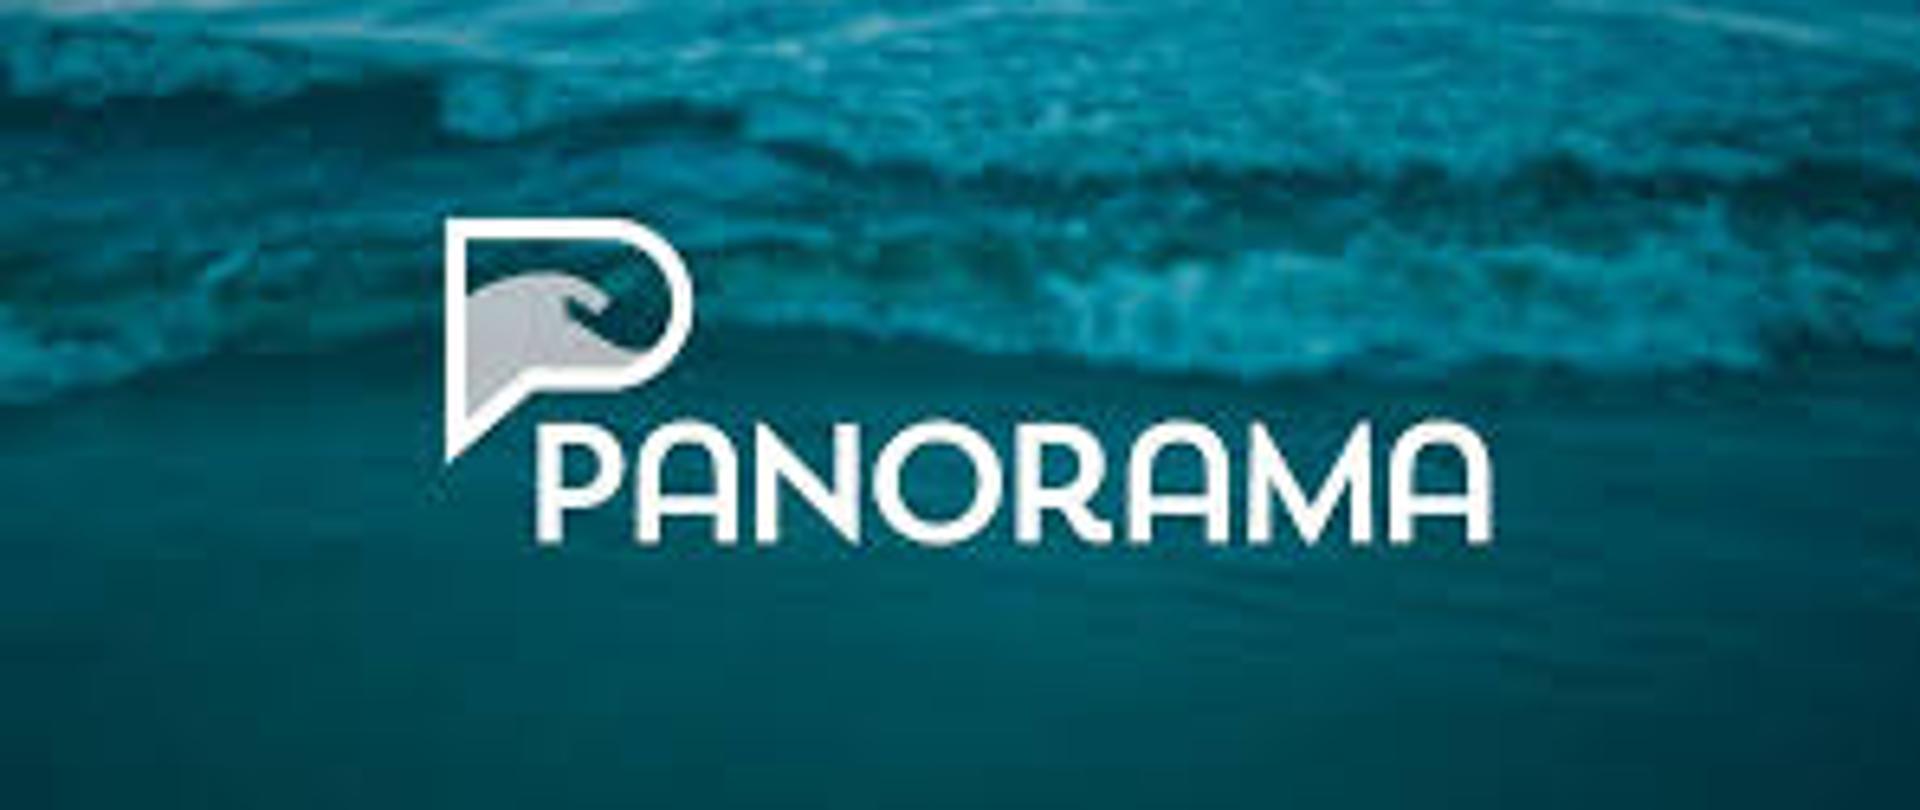 Zdjęcie przedstawia logo programu "Forum Panoramy".